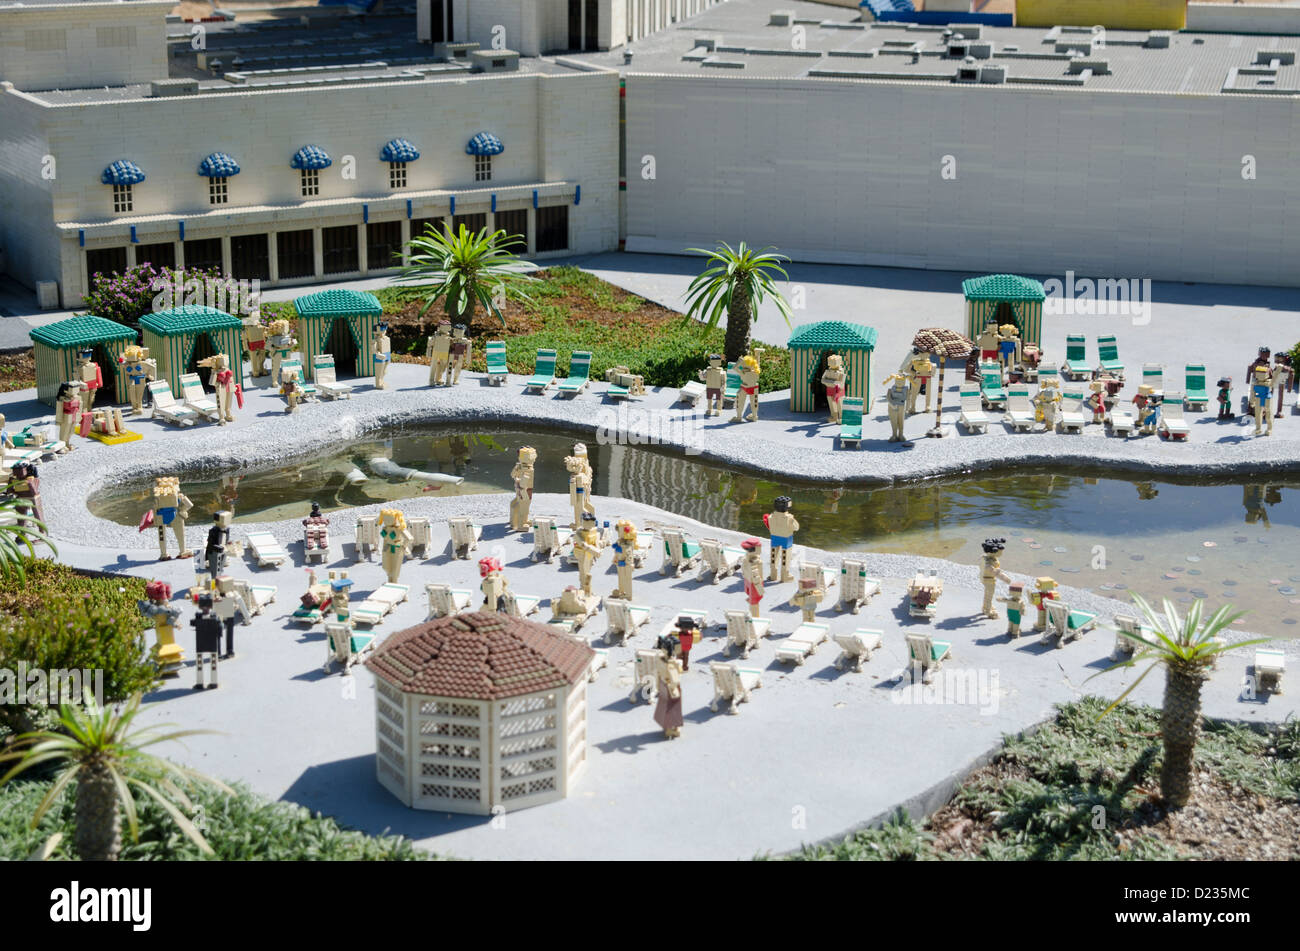 Una escena de Miniland Las Vegas, Legoland California Resort parque temático de diversiones, San Diego, California, EE.UU. Foto de stock